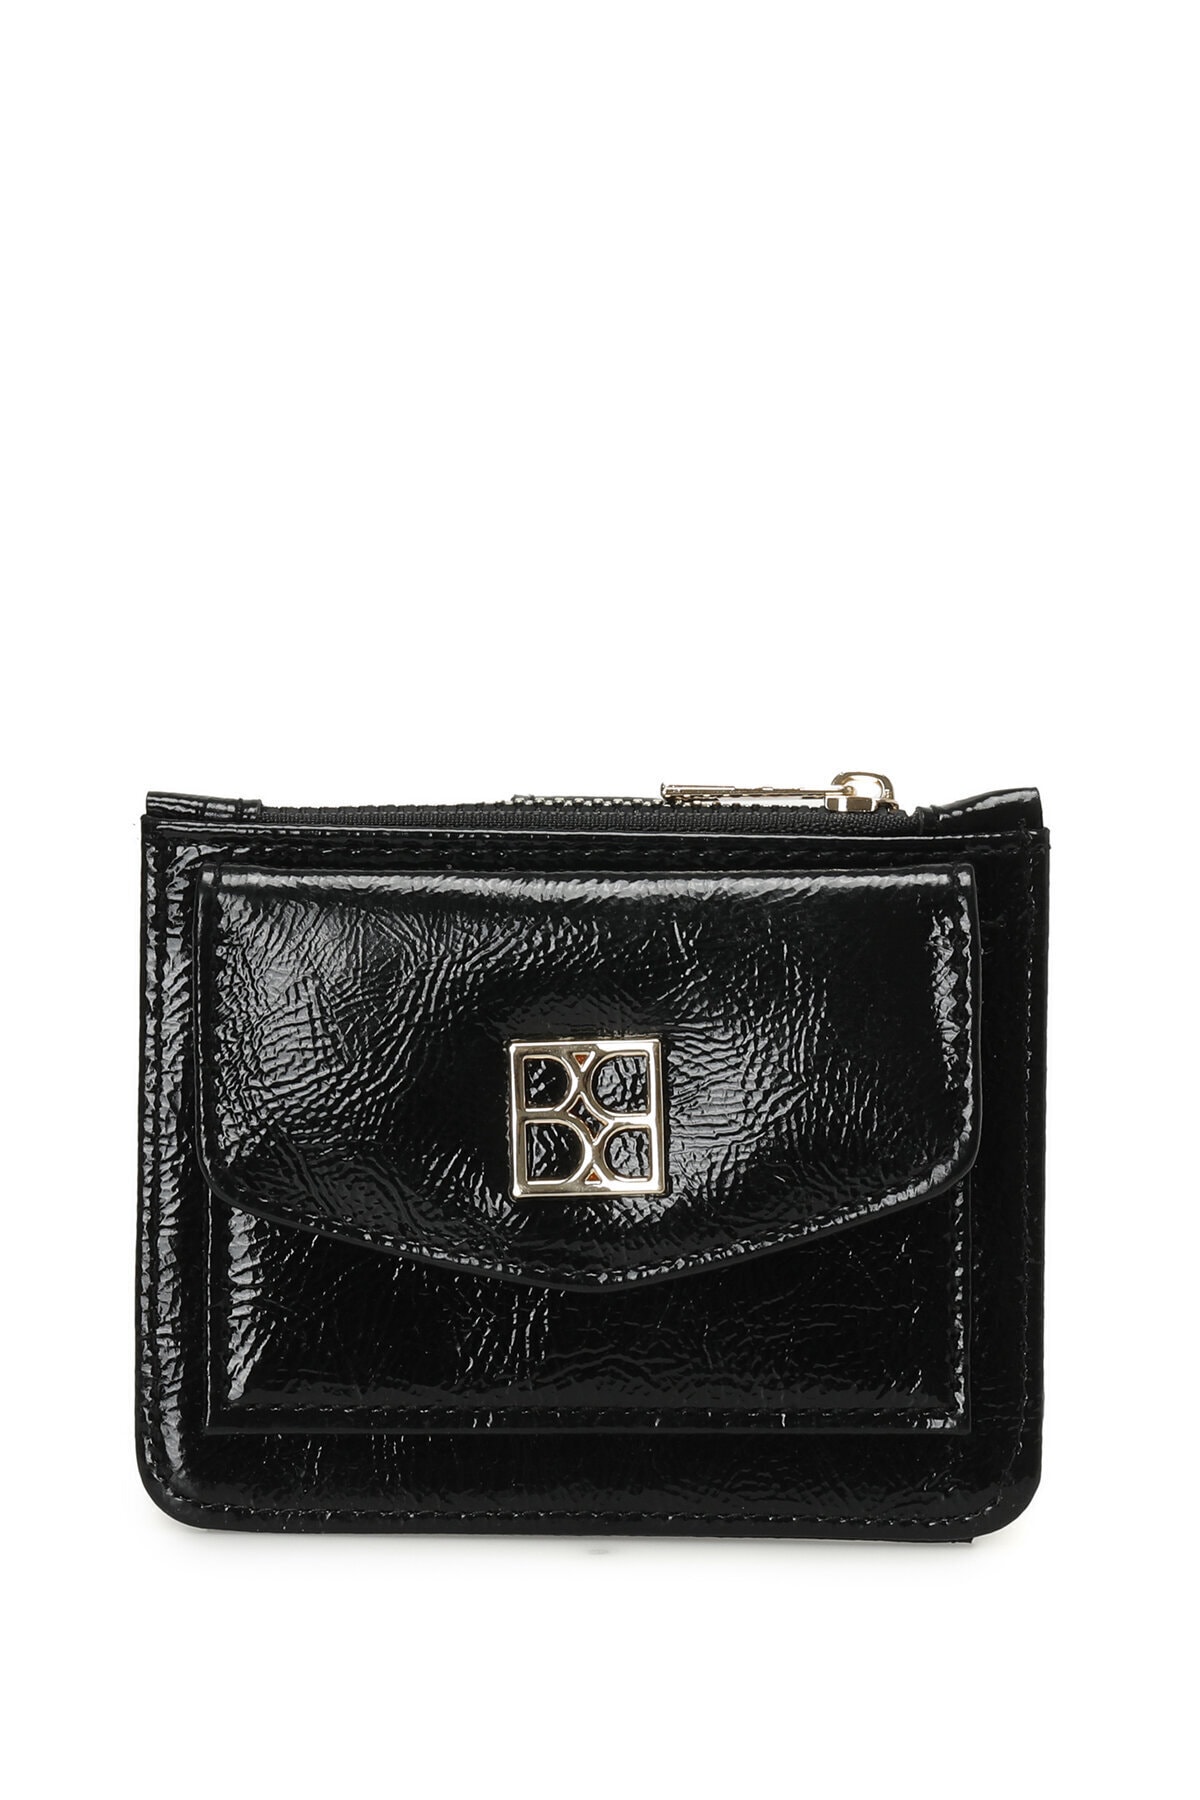 Levně Butigo Patent leather LUX KRT 3PR Black Women's Wallet